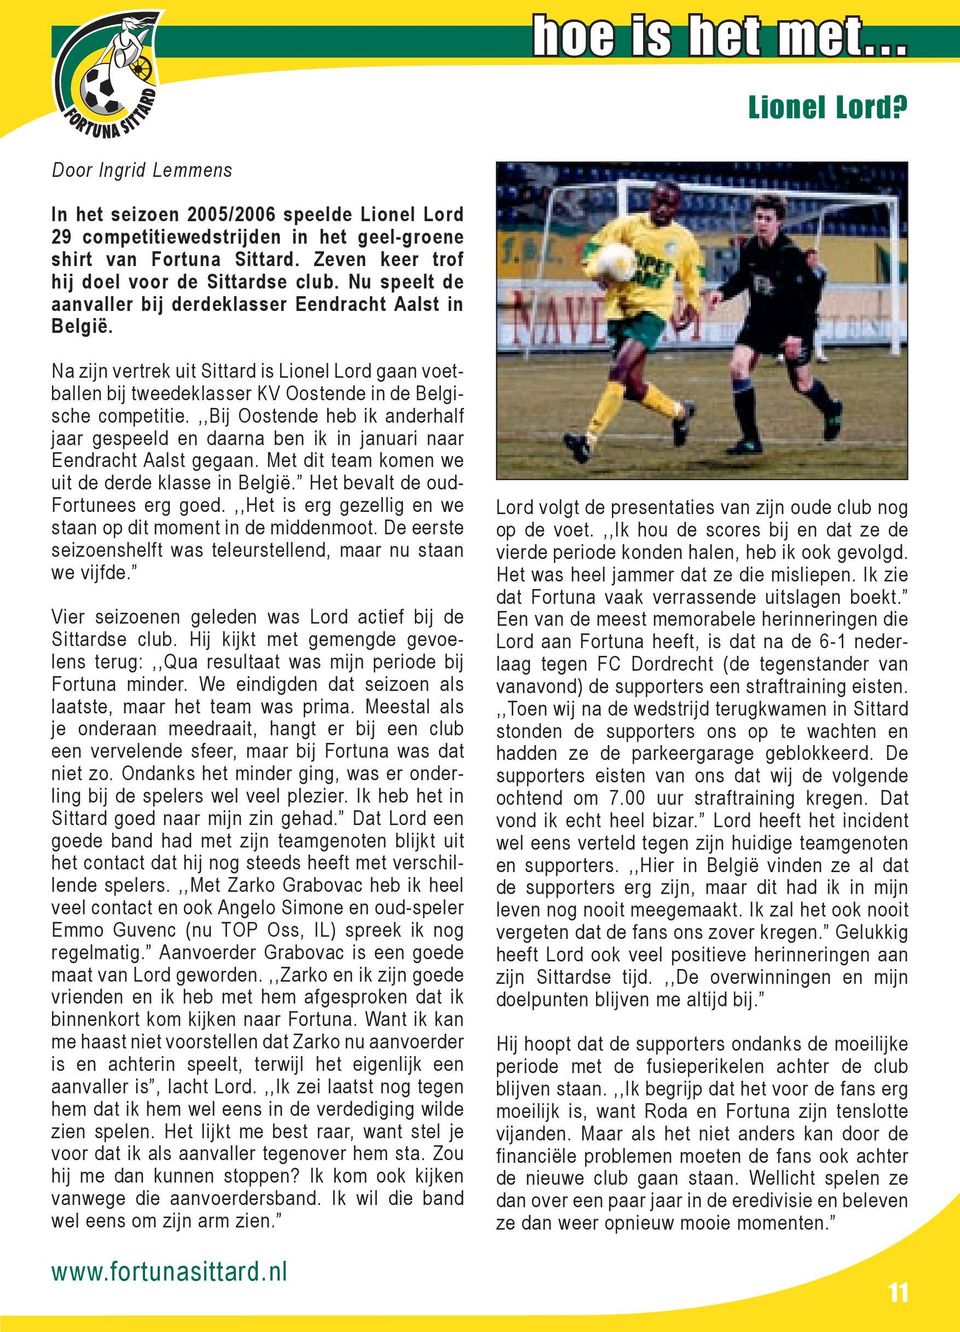 Na zijn vertrek uit Sittard is Lionel Lord gaan voetballen bij tweedeklasser KV Oostende in de Belgische competitie.